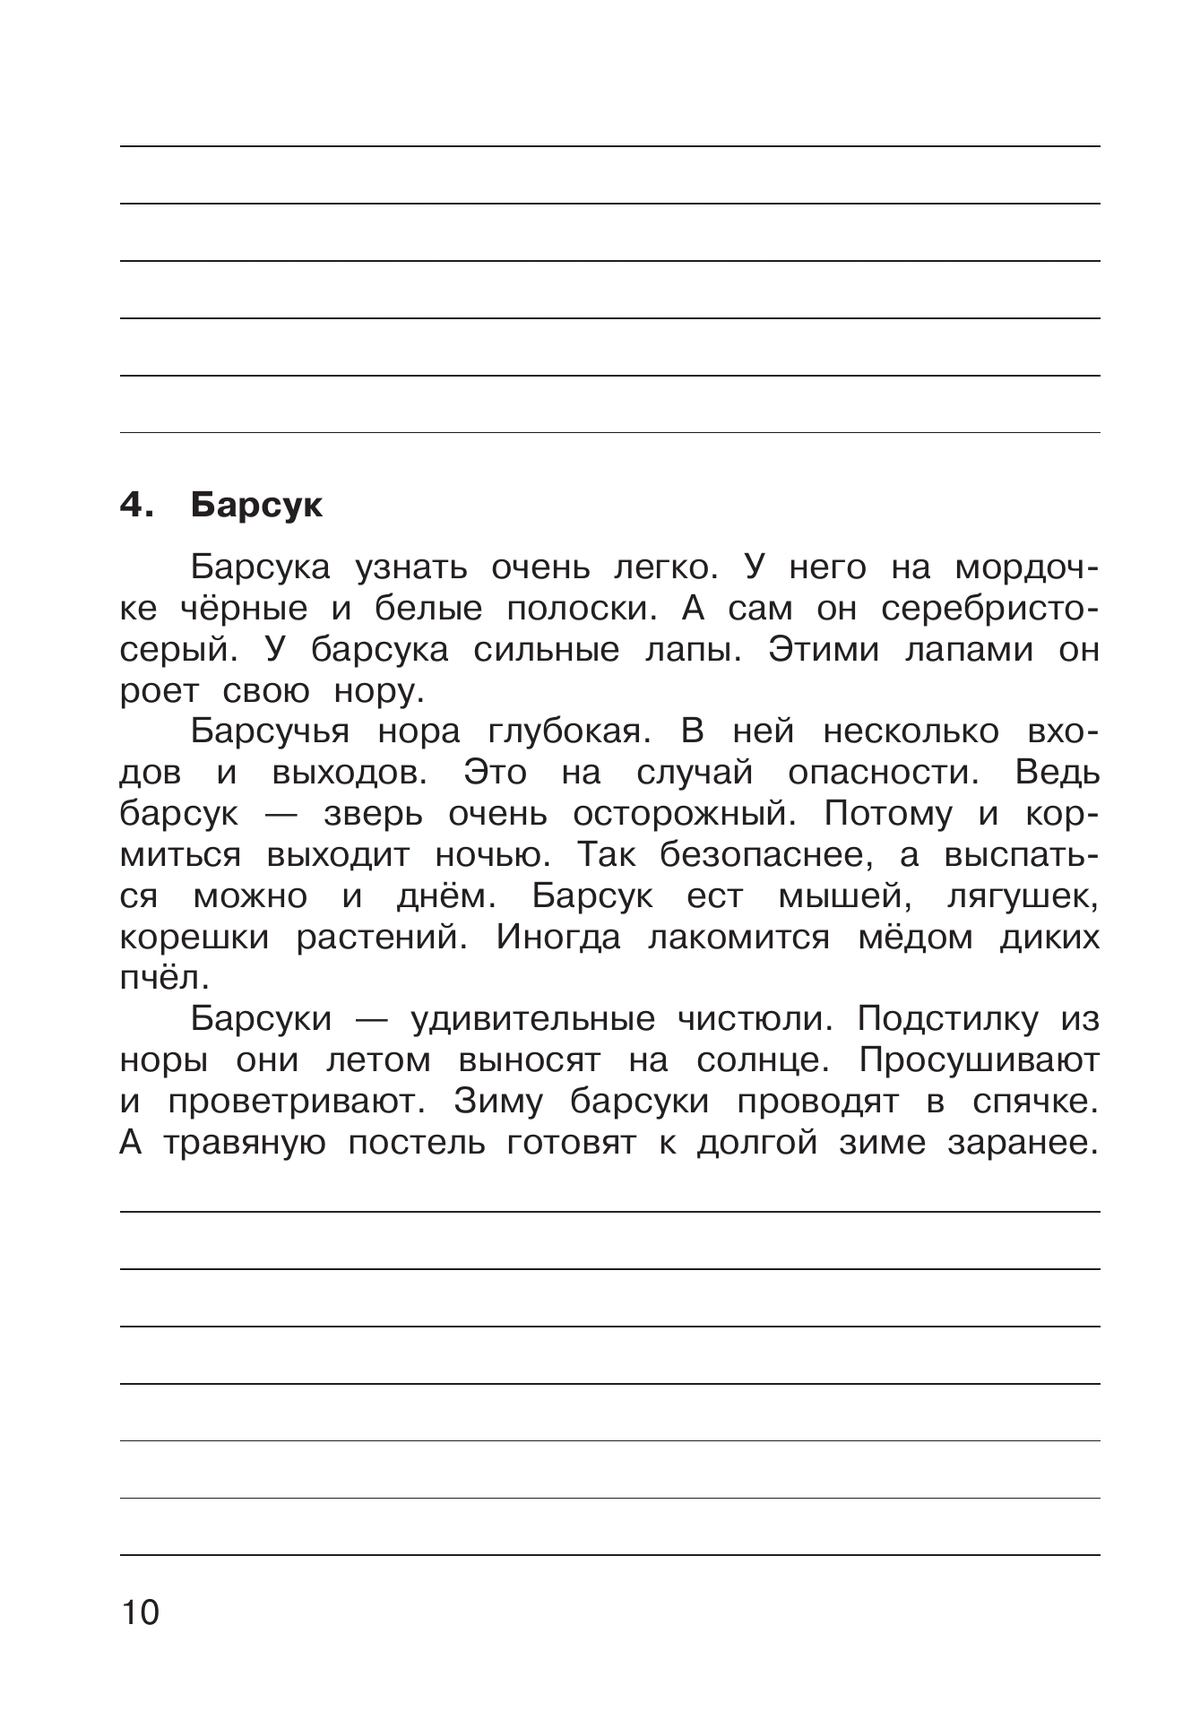 Русский язык. 3 класс. В 2 частях. Часть 1. Рабочая тетрадь к учебному пособию 9